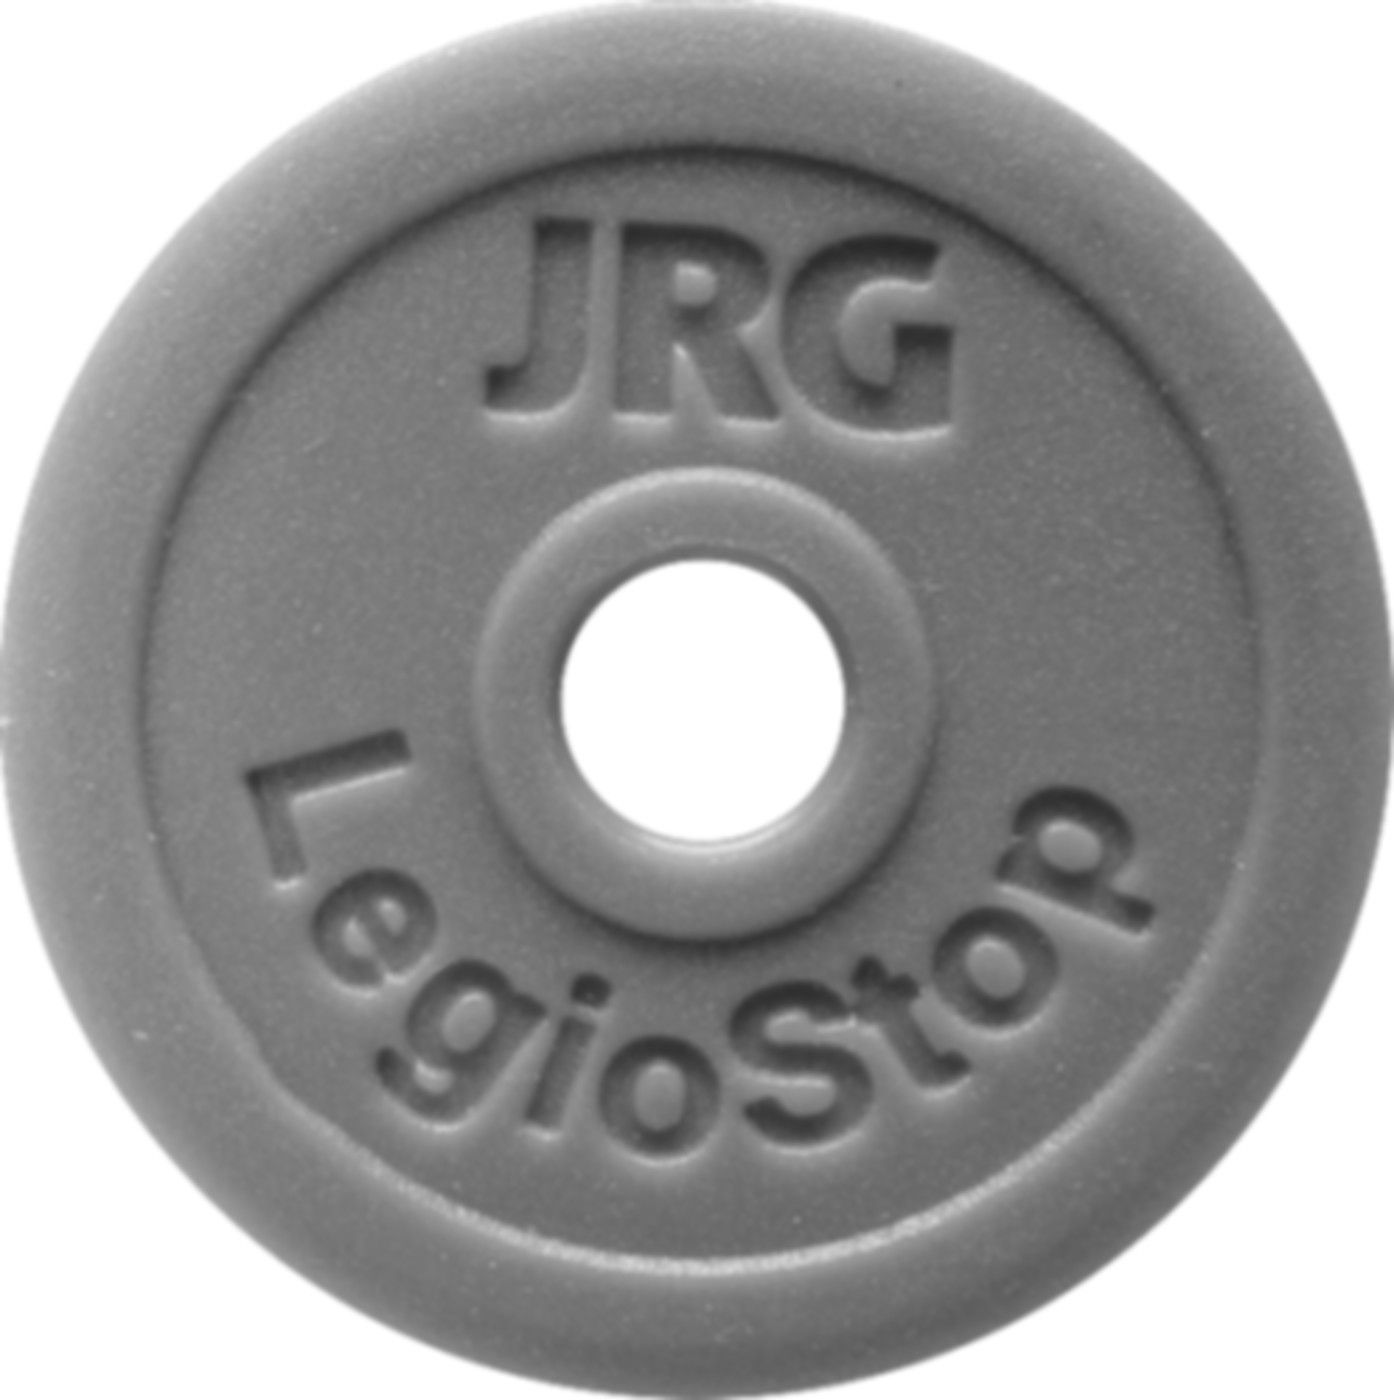 Markierschild Grün d 90mm 8501.103 für Oberteil LegioStop 11/2" + 2" - JRG Armaturen